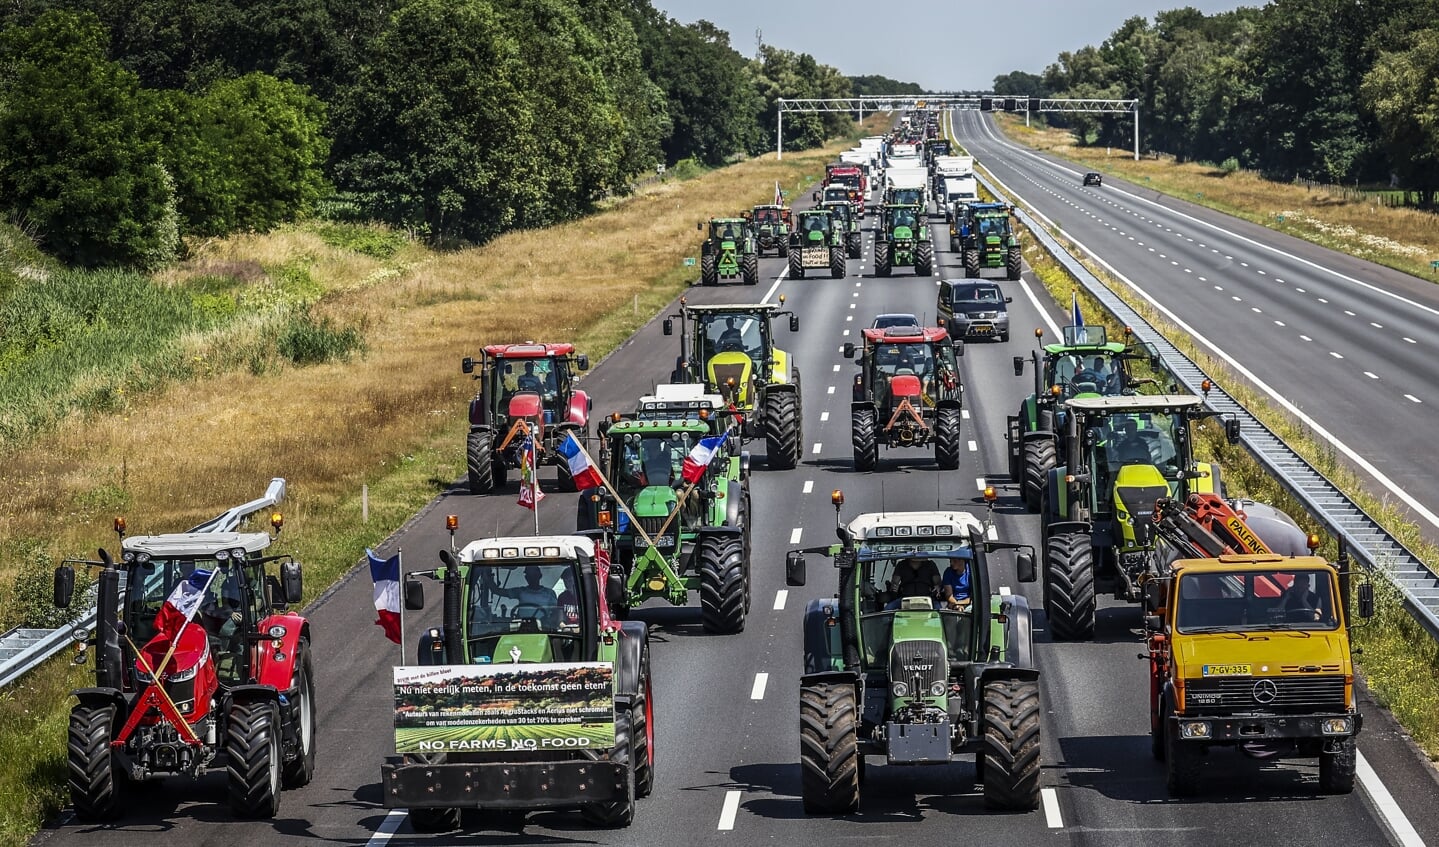 Trekkers met protesterende boeren onderweg op de A1 in de buurt van Enter. Boeren voeren actie tegen de stikstofplannen van het kabinet.